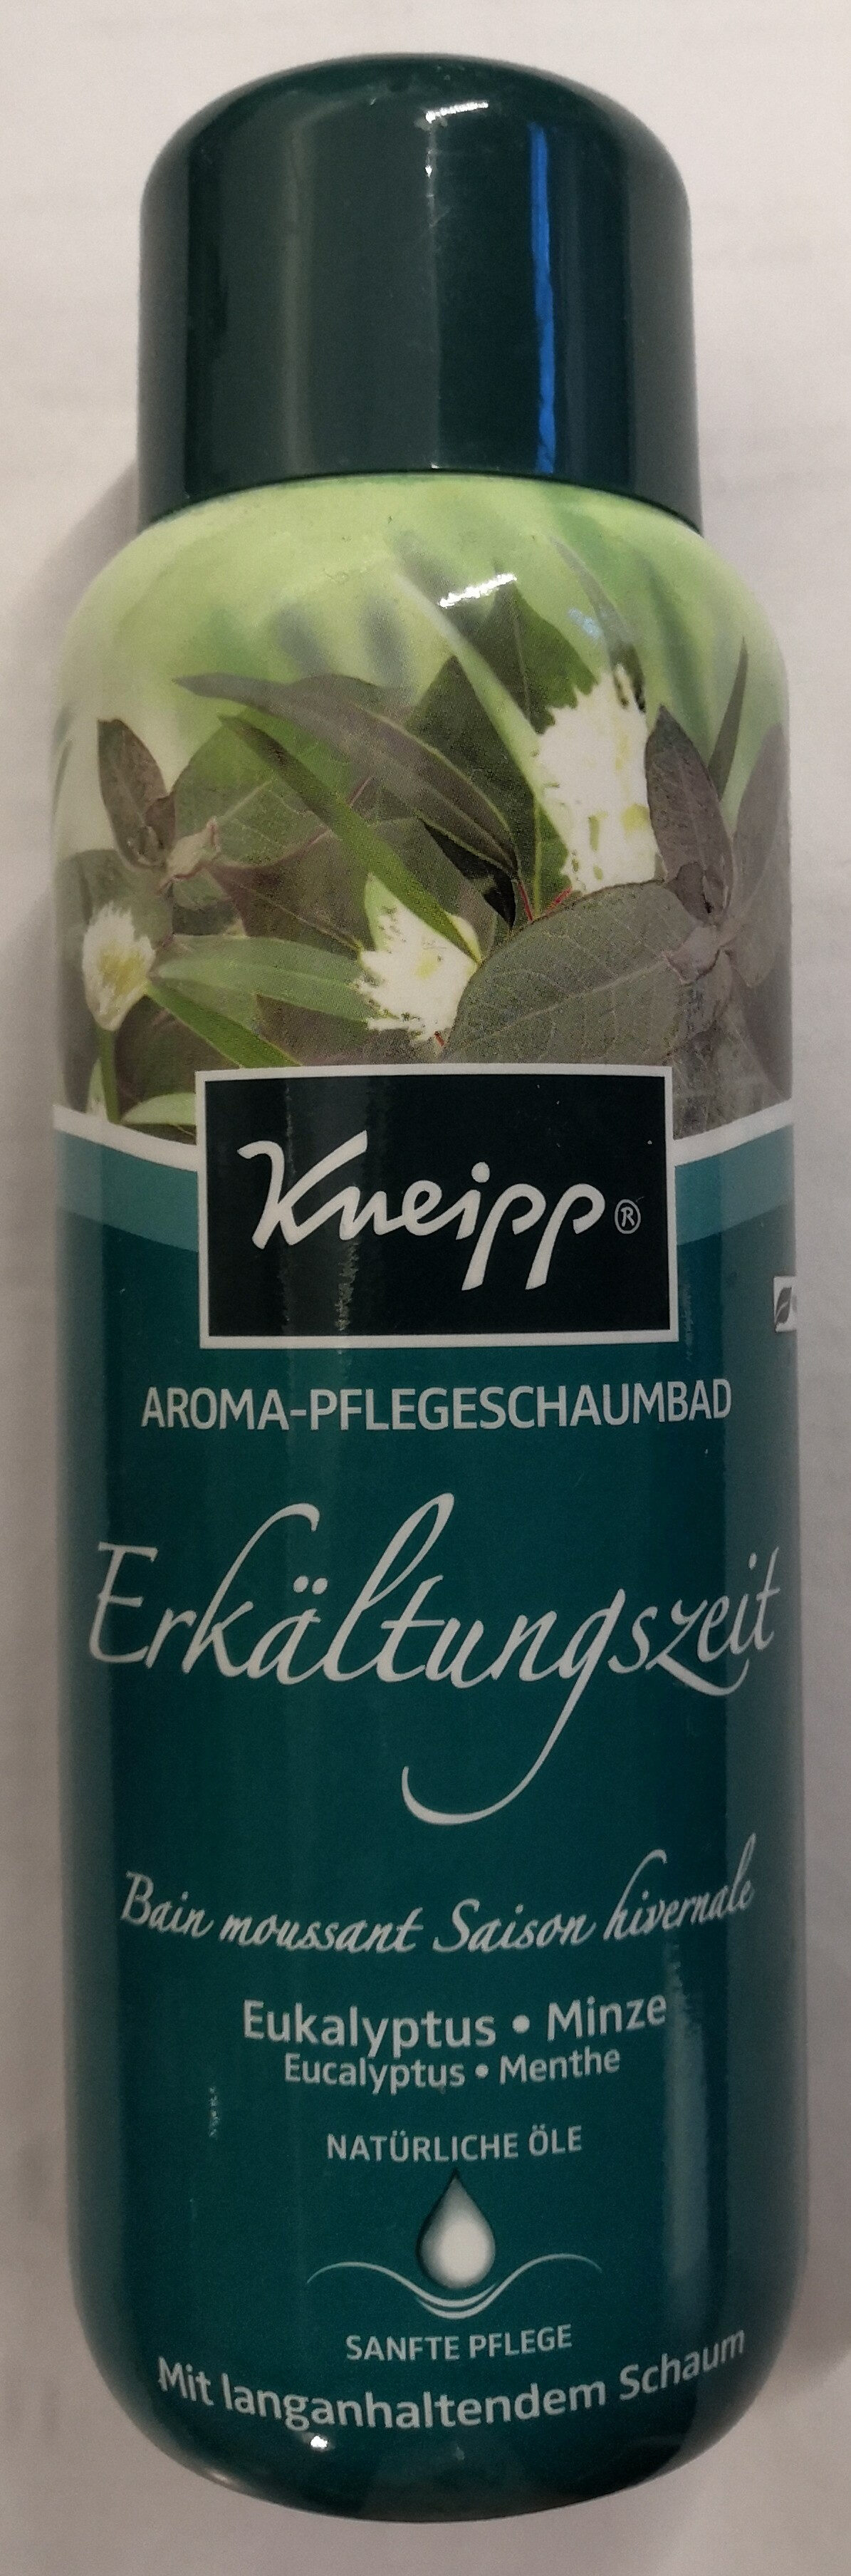 Aroma-Pflegeschaumbad Erkältungszeit Eukalyptus-Minze - Produit - de